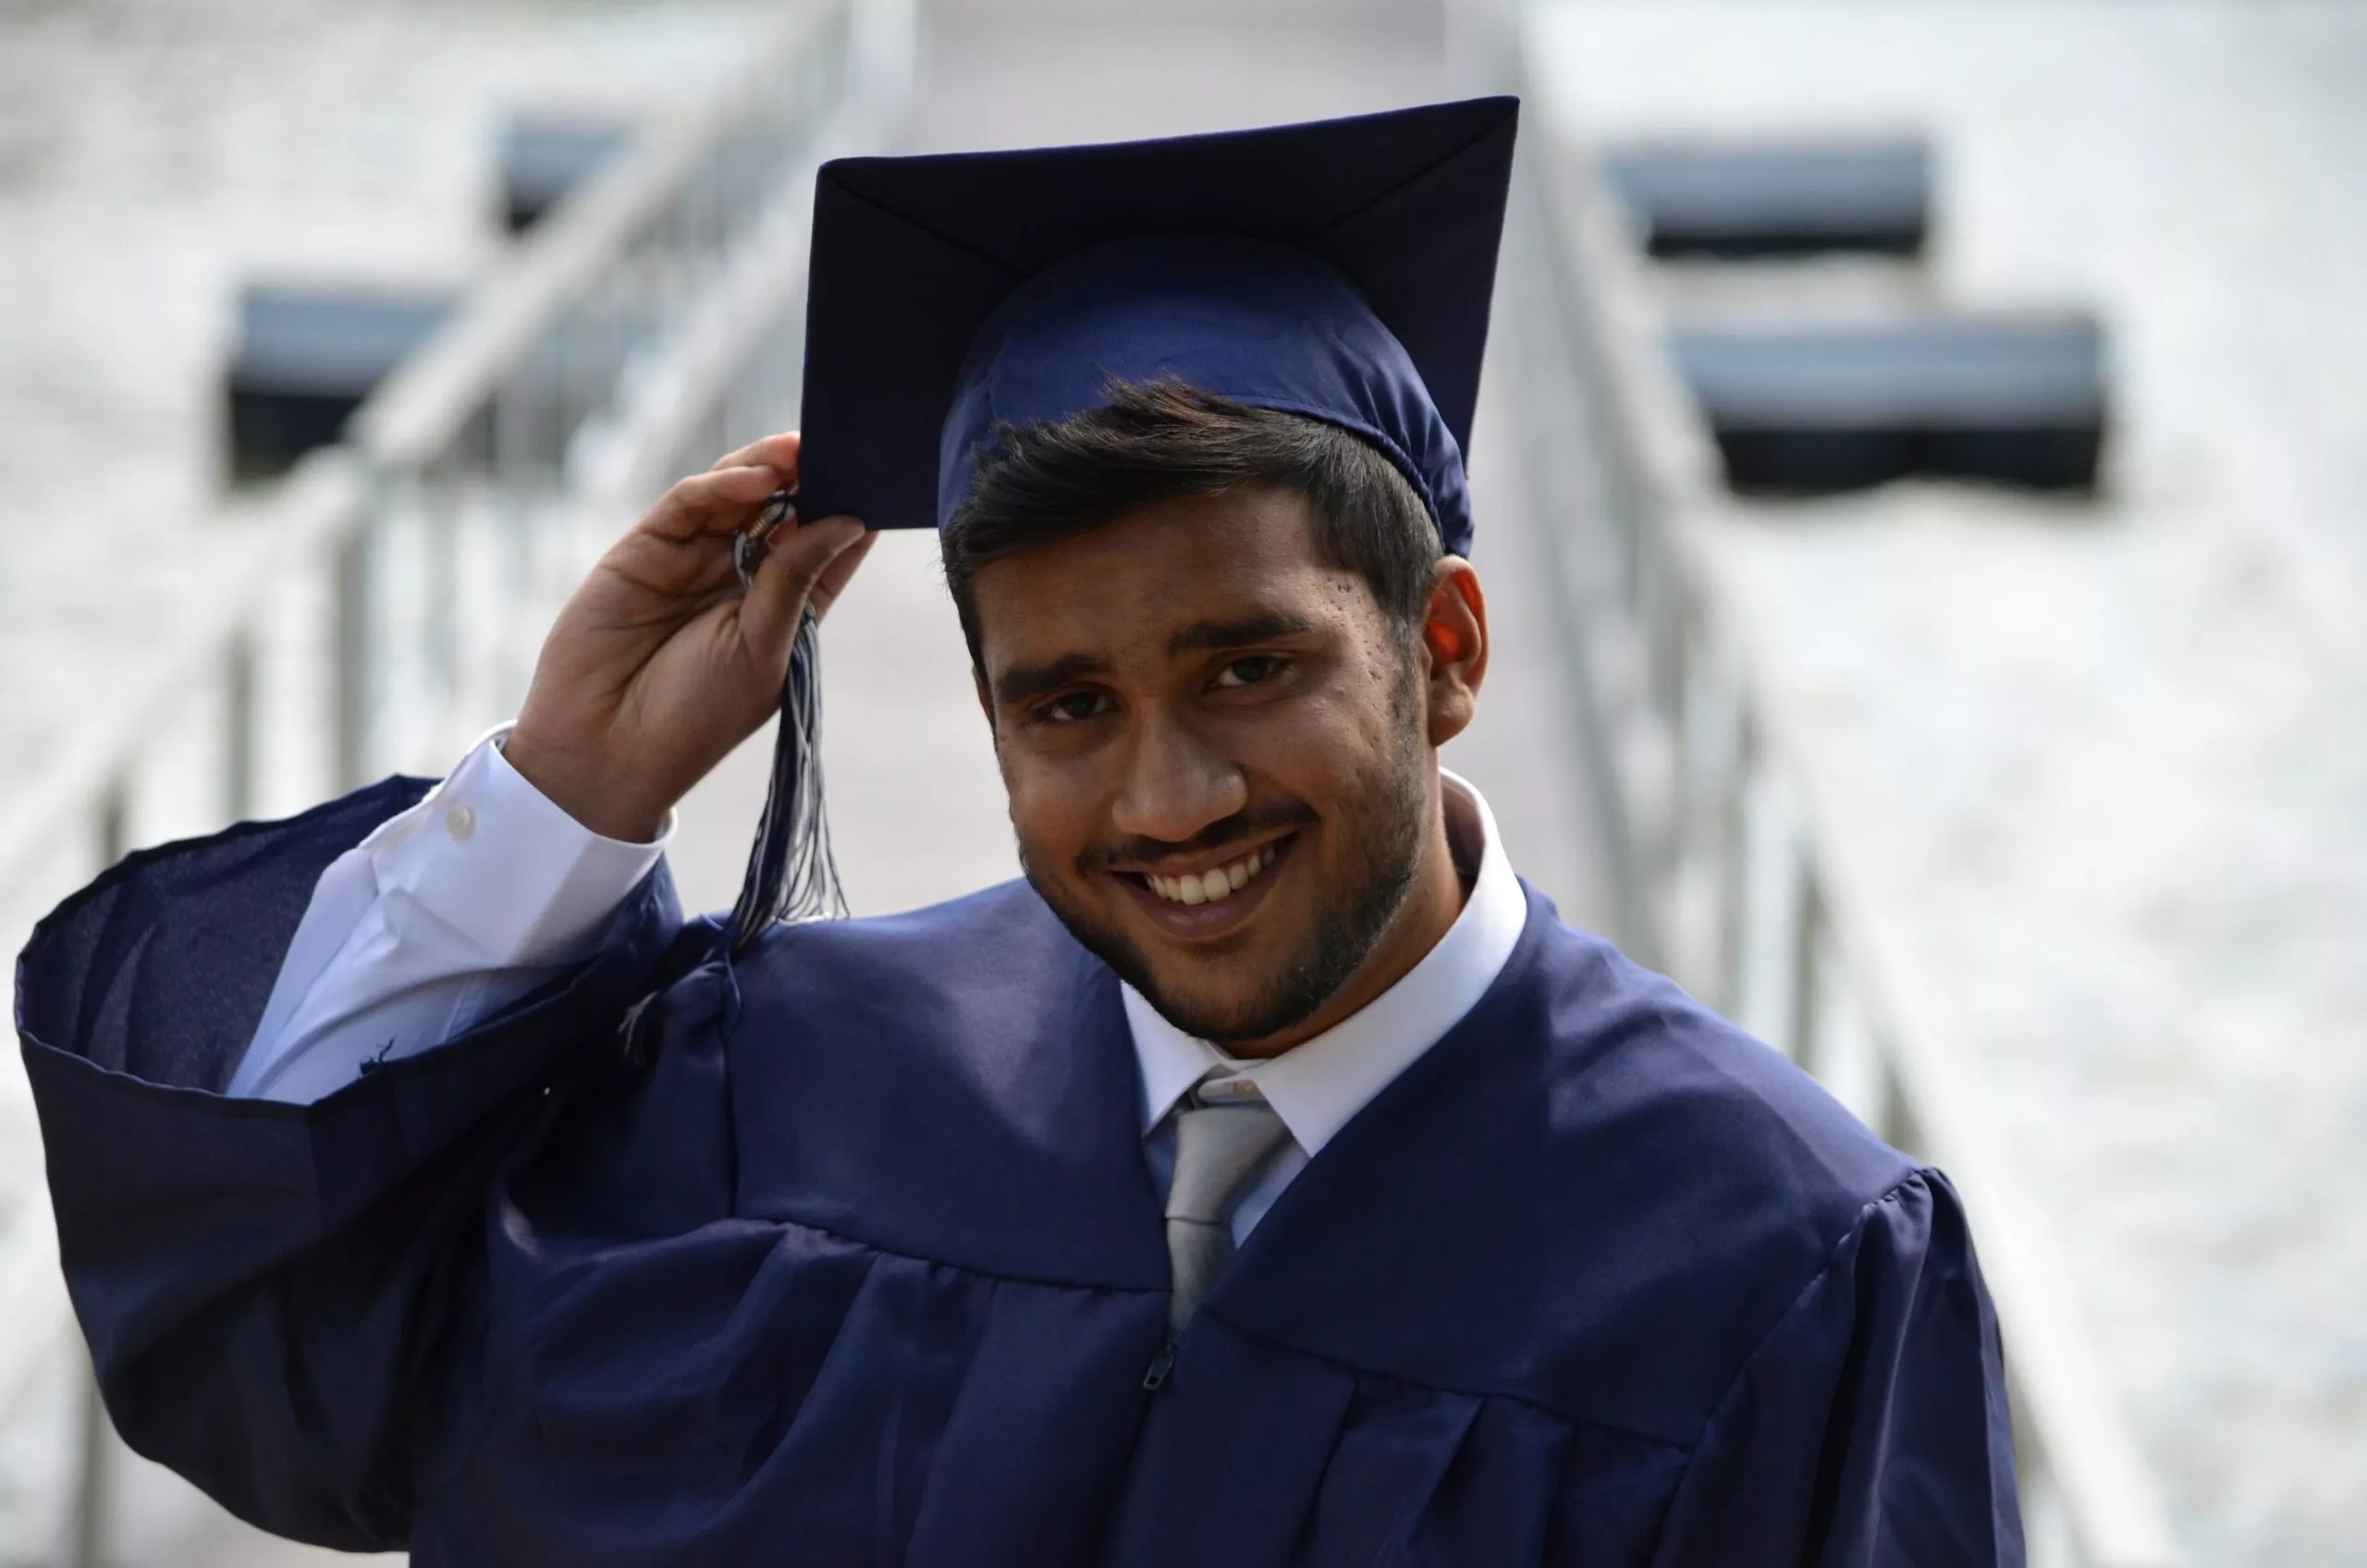 Ein Absolvent in seinem Talar mit Hut lächelt